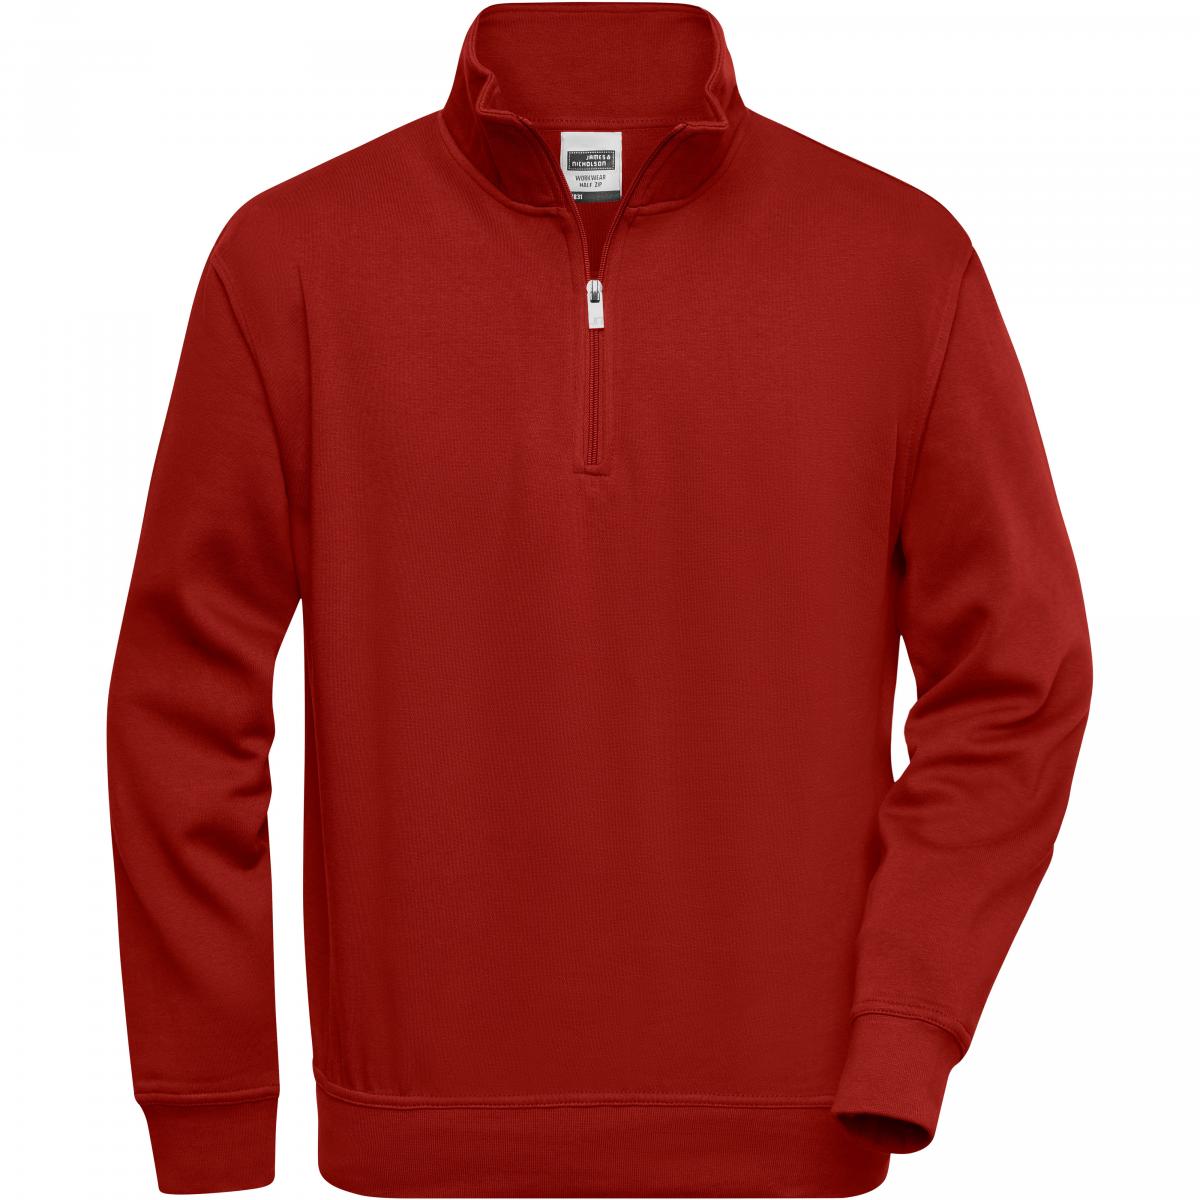 Hersteller: James+Nicholson Herstellernummer: JN831 Artikelbezeichnung: Workwear Half Zip Sweatshirt +Waschbar bis 60 °C Farbe: Wine